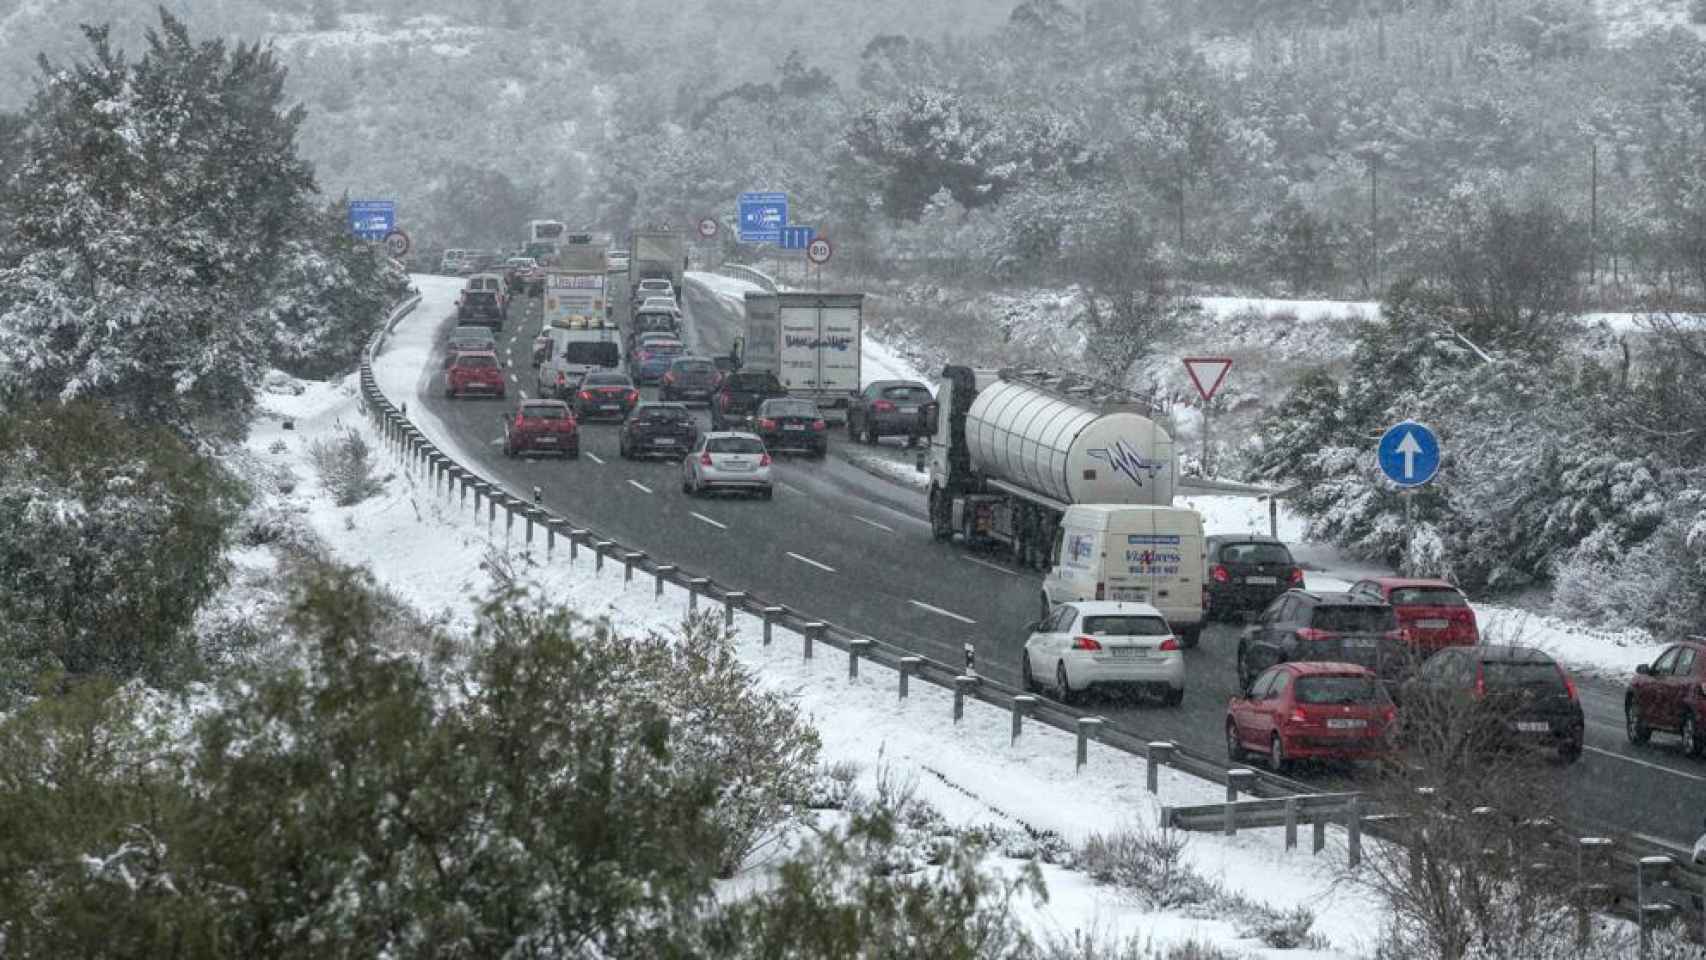 Varios vehículos detenidos en la carretera por la nieve.